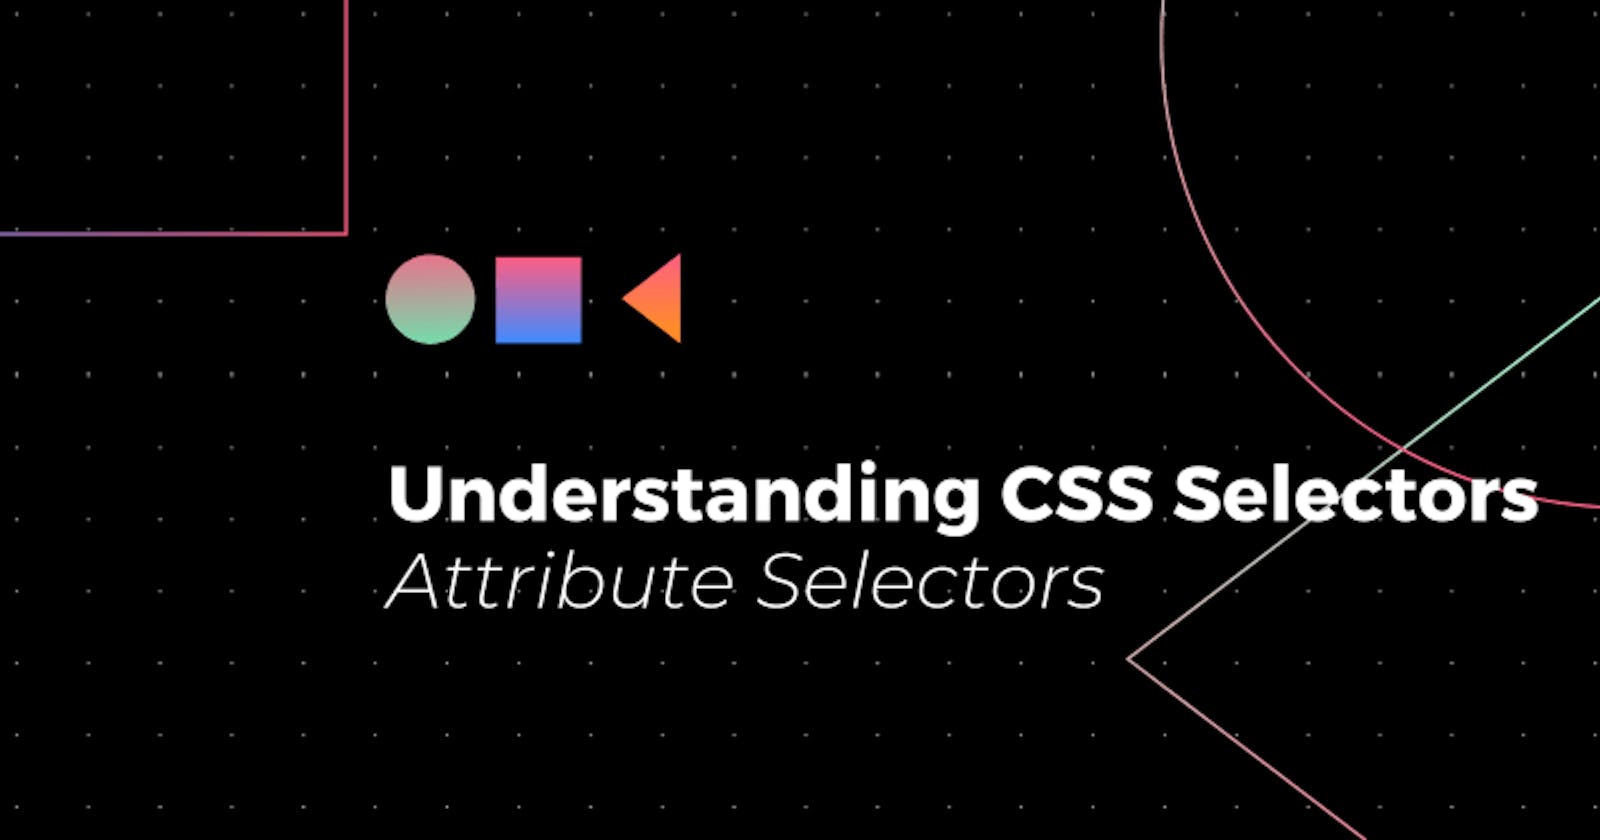 Understanding CSS Selectors: Attribute Selectors